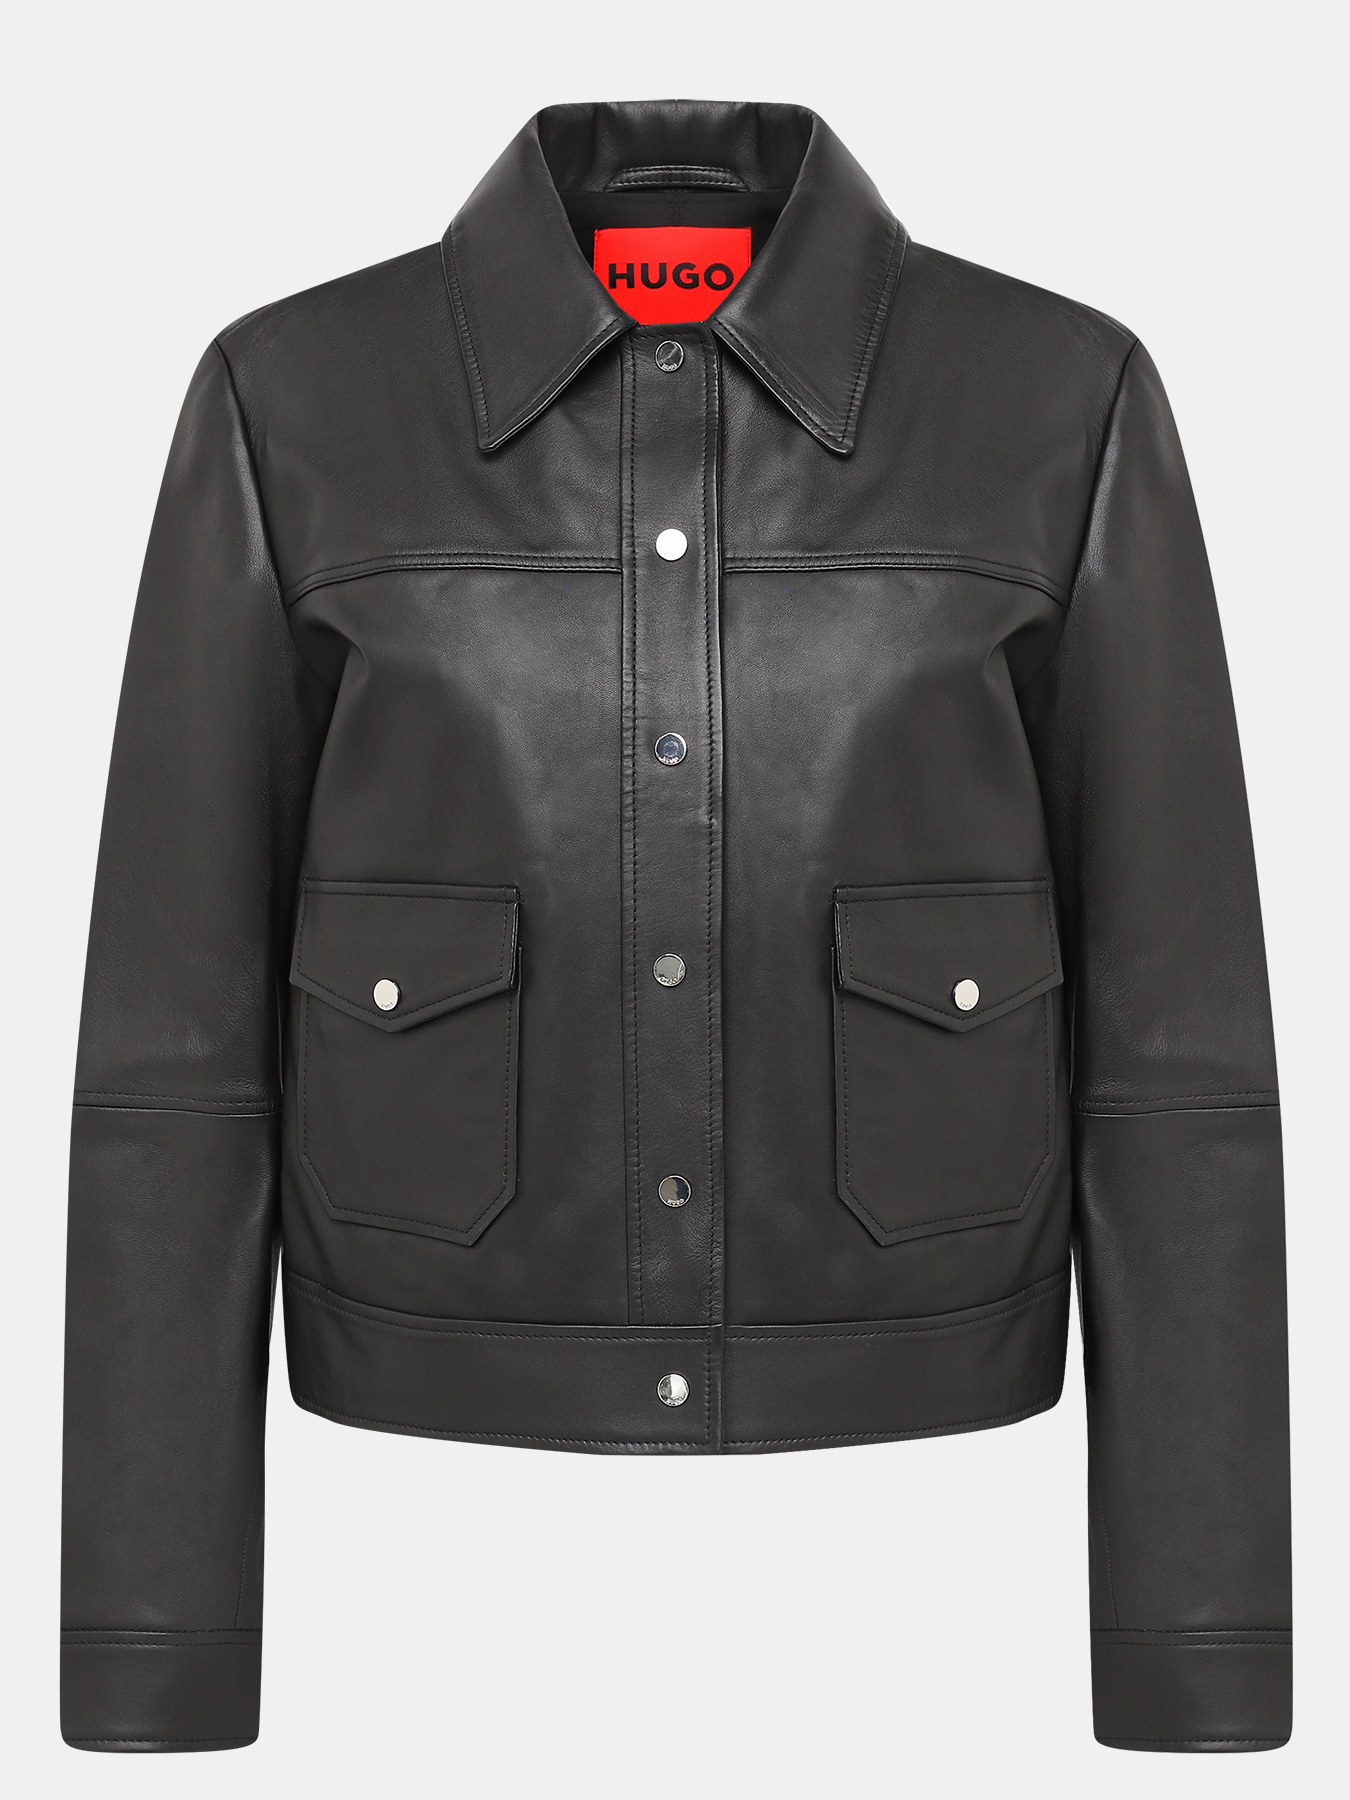 Кожаная куртка Lavelli HUGO 426669-044, цвет черный, размер 46-48